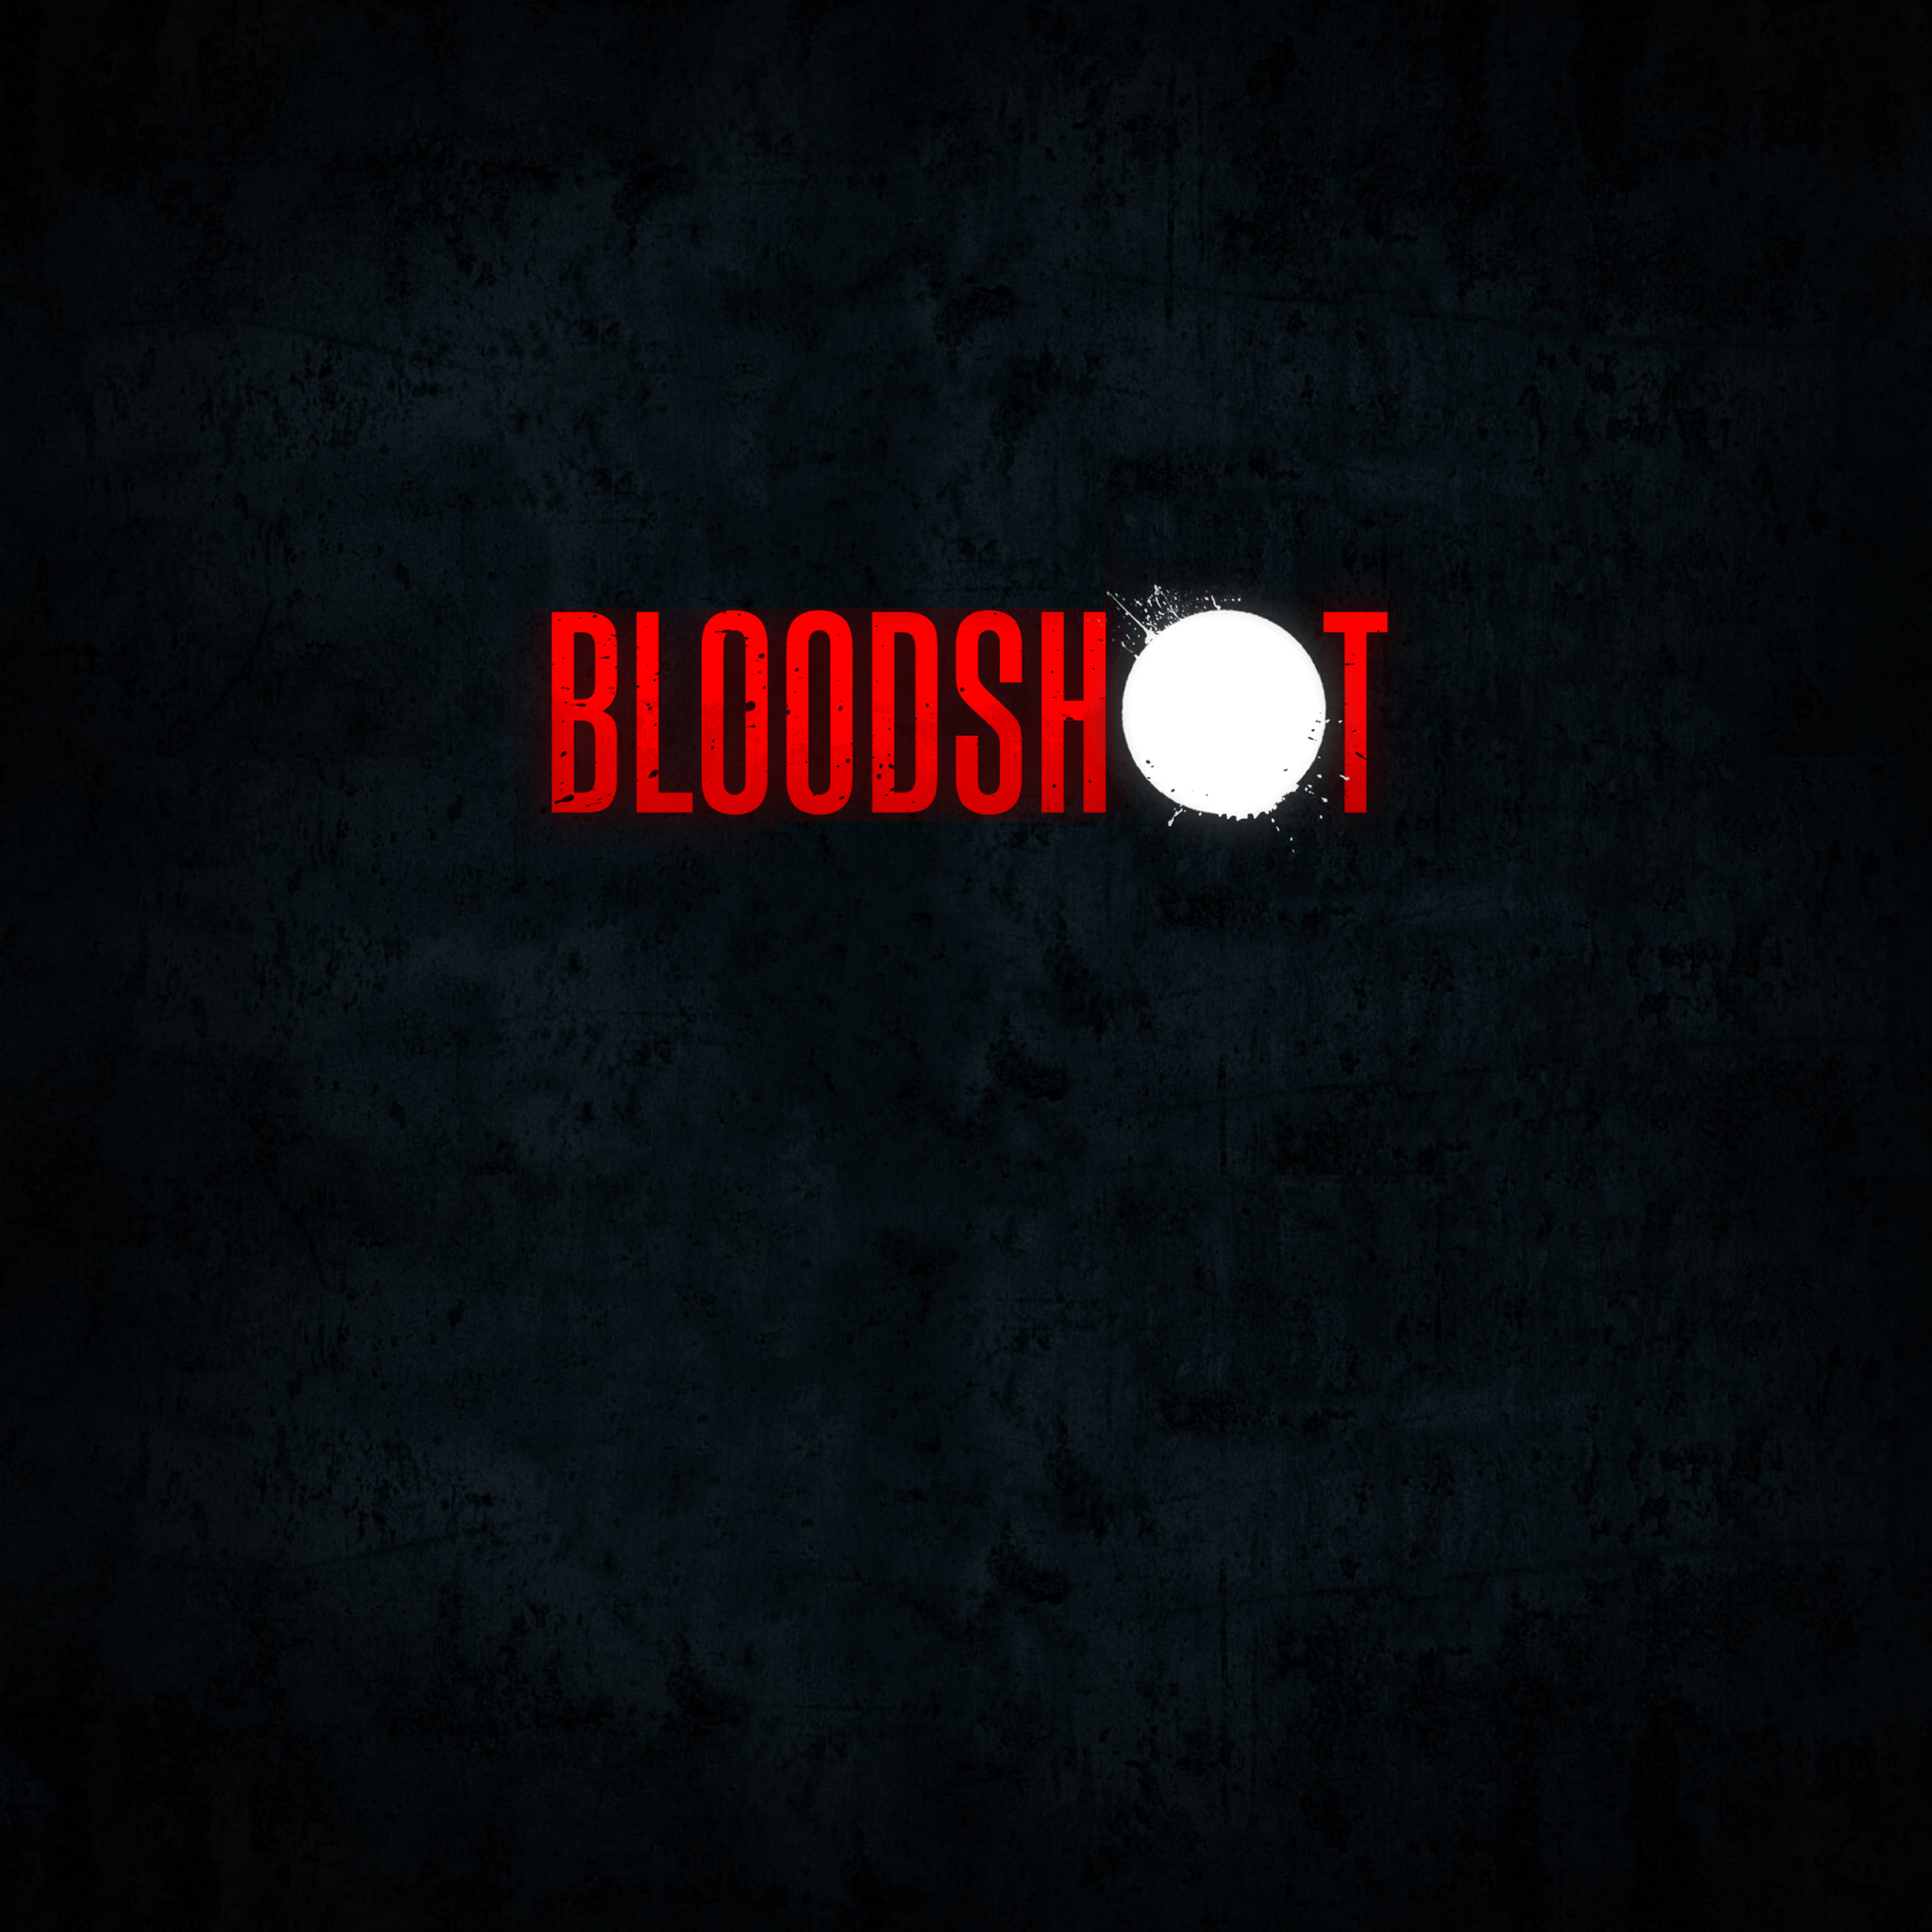 download lkg bloodshot 2